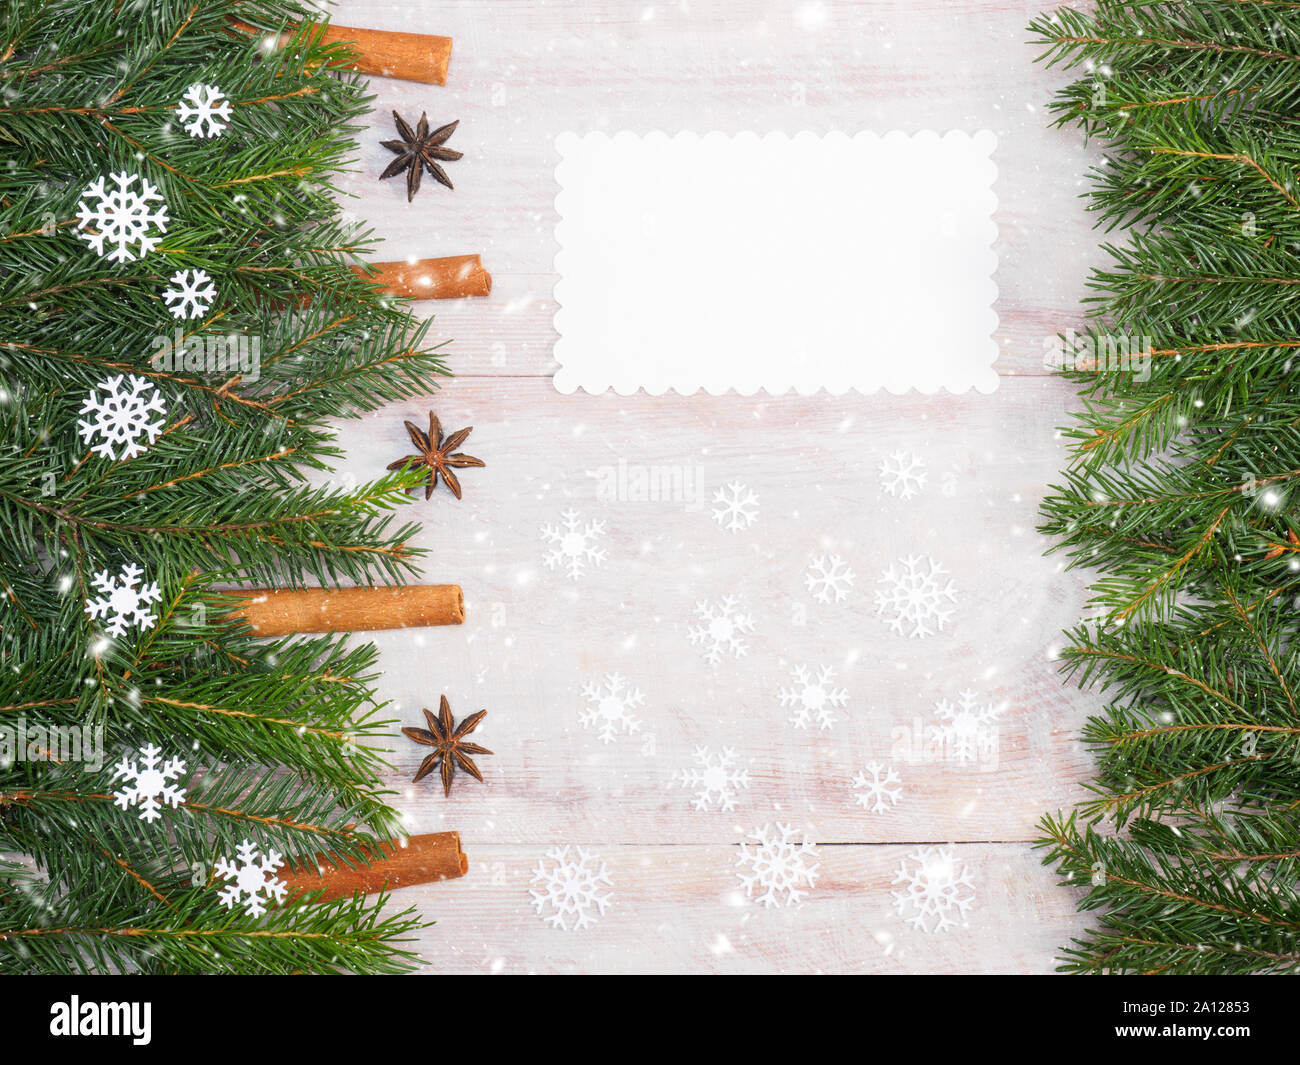 Fond de Noël avec des branches de sapin, des flocons de neige, la cannelle, l'anis, cônes, sur la plaque de fond en bois brun. Noël et Nouvel An concept Banque D'Images